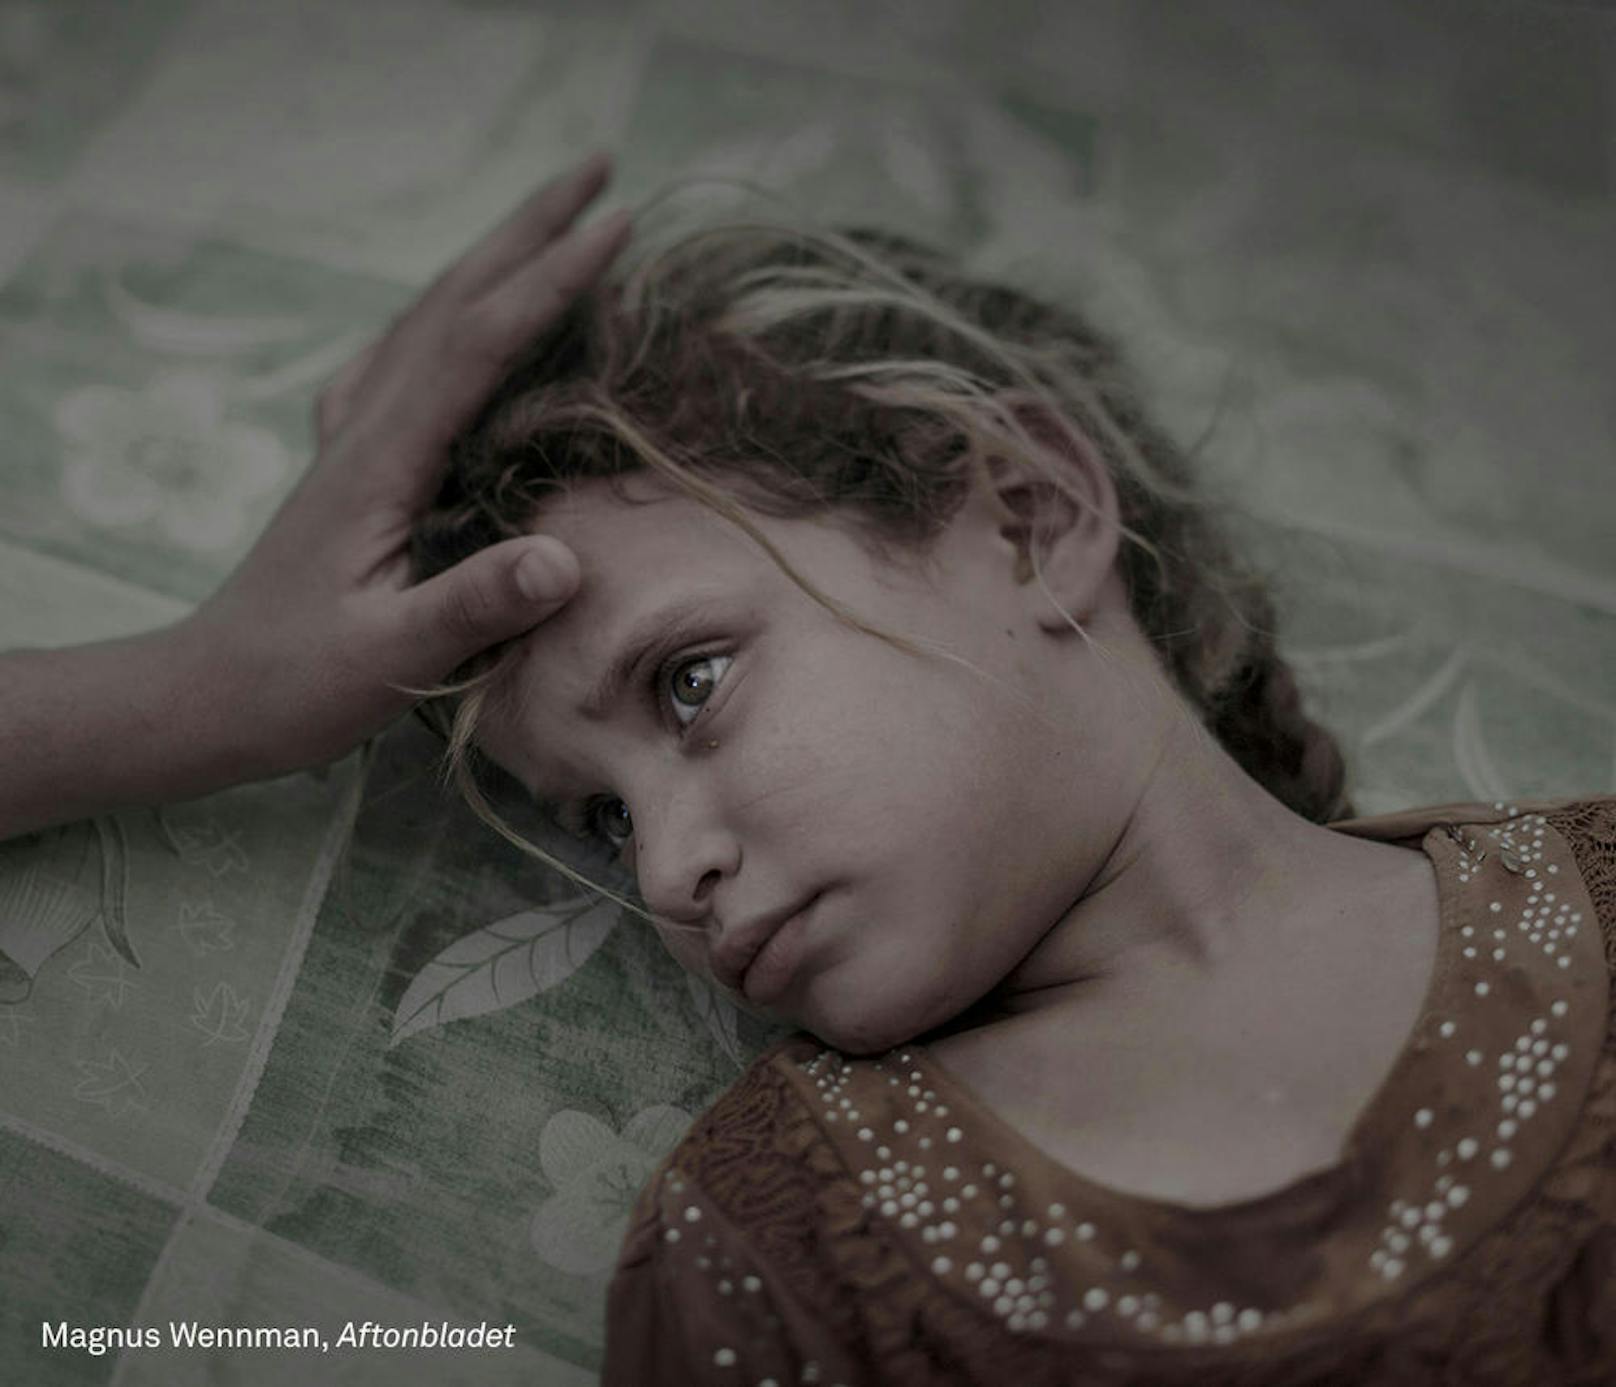 <b>People - 1. Preis, Singles</b><br> Was der IS überglassen hat<br>Maha, 5, und ihre Familie flohen aus dem Dorf Hawija nahe Mosul im Irak. Es sei die Angst vor dem IS und der Mangel an Nahrung gewesen, die sie zur Flucht gezwungen hätte, erzählt die Mutter. Jetzt liegt Maha auf einer verdreckten Matratze in einem überfüllten Tansitzentrum im Debaga Flüchtlingscamp. "Ich träume nicht und ich habe keine Angst mehr", sagt Maha leise, während ihre Mutter ihr übers Haar streicht.